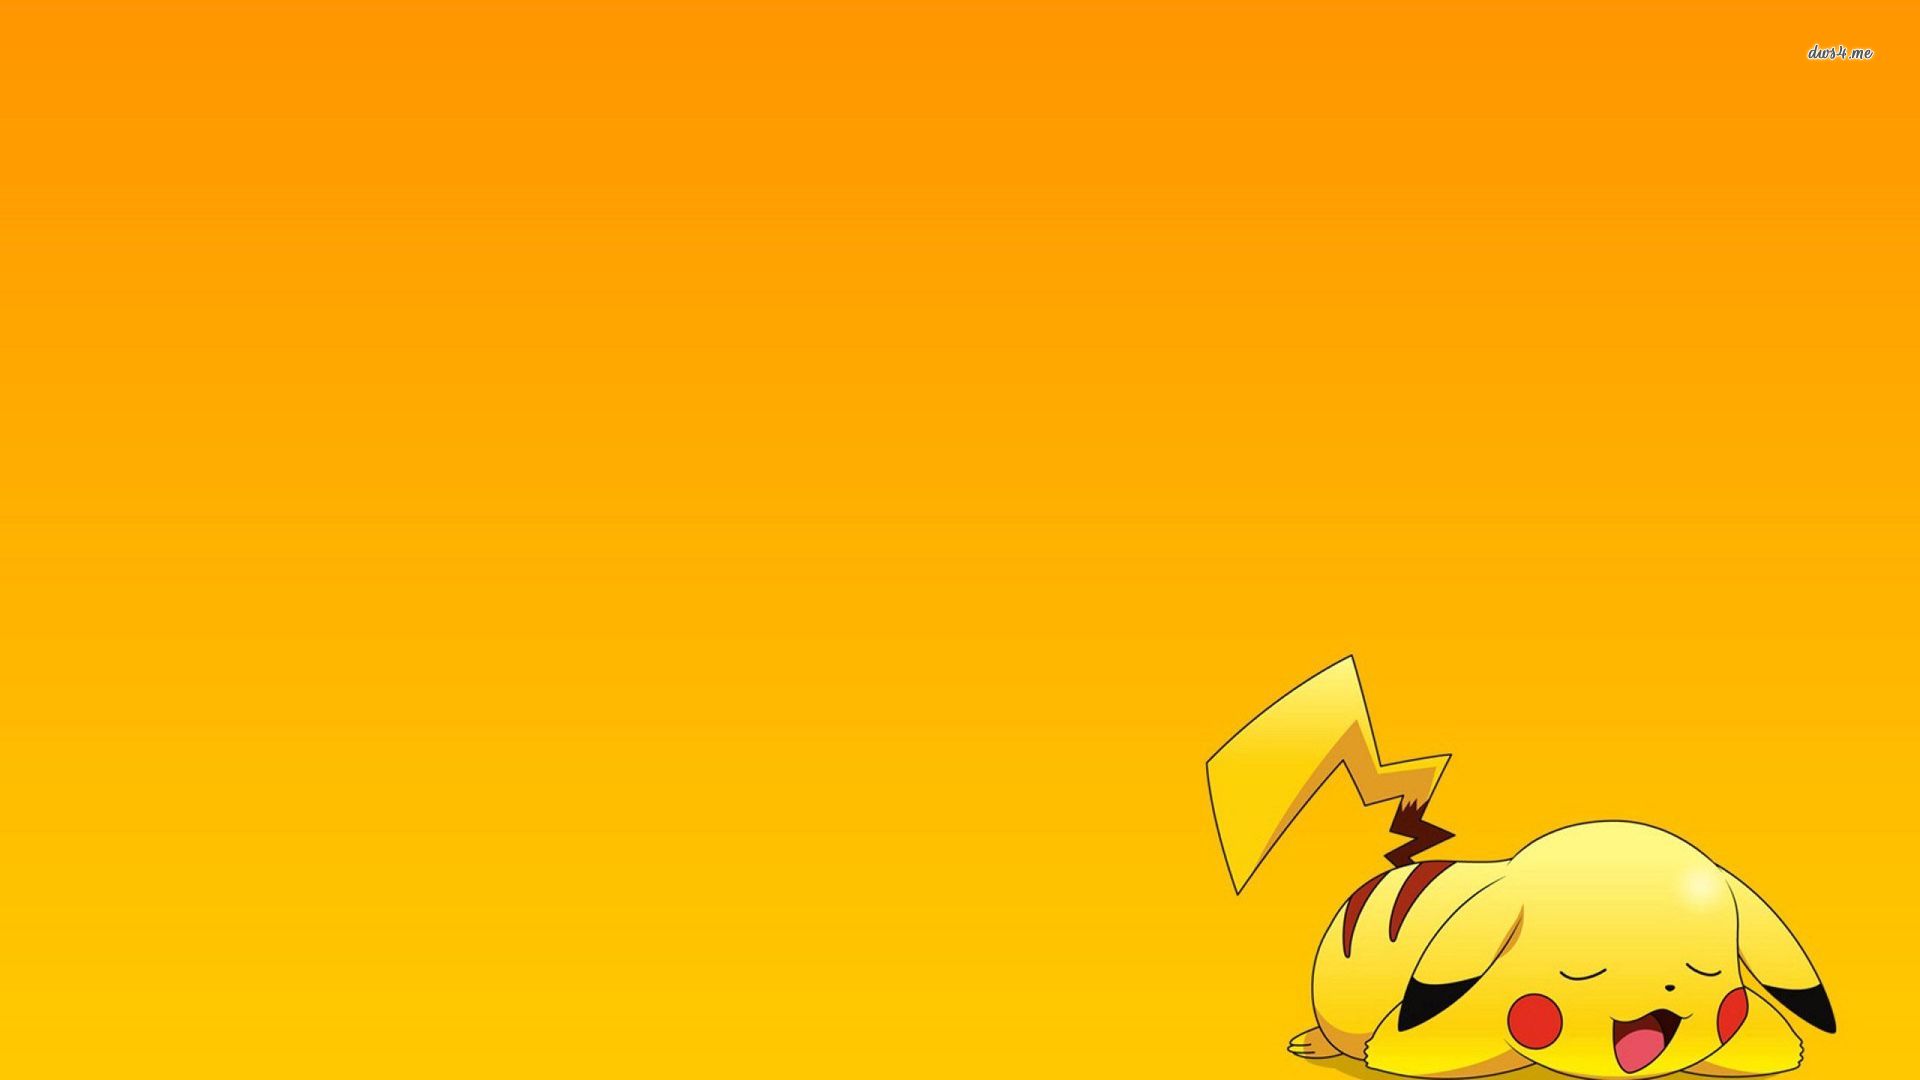 Pokemon Wallpapers By Request - Pikachu Desktop Wallpaper Hd , HD Wallpaper & Backgrounds